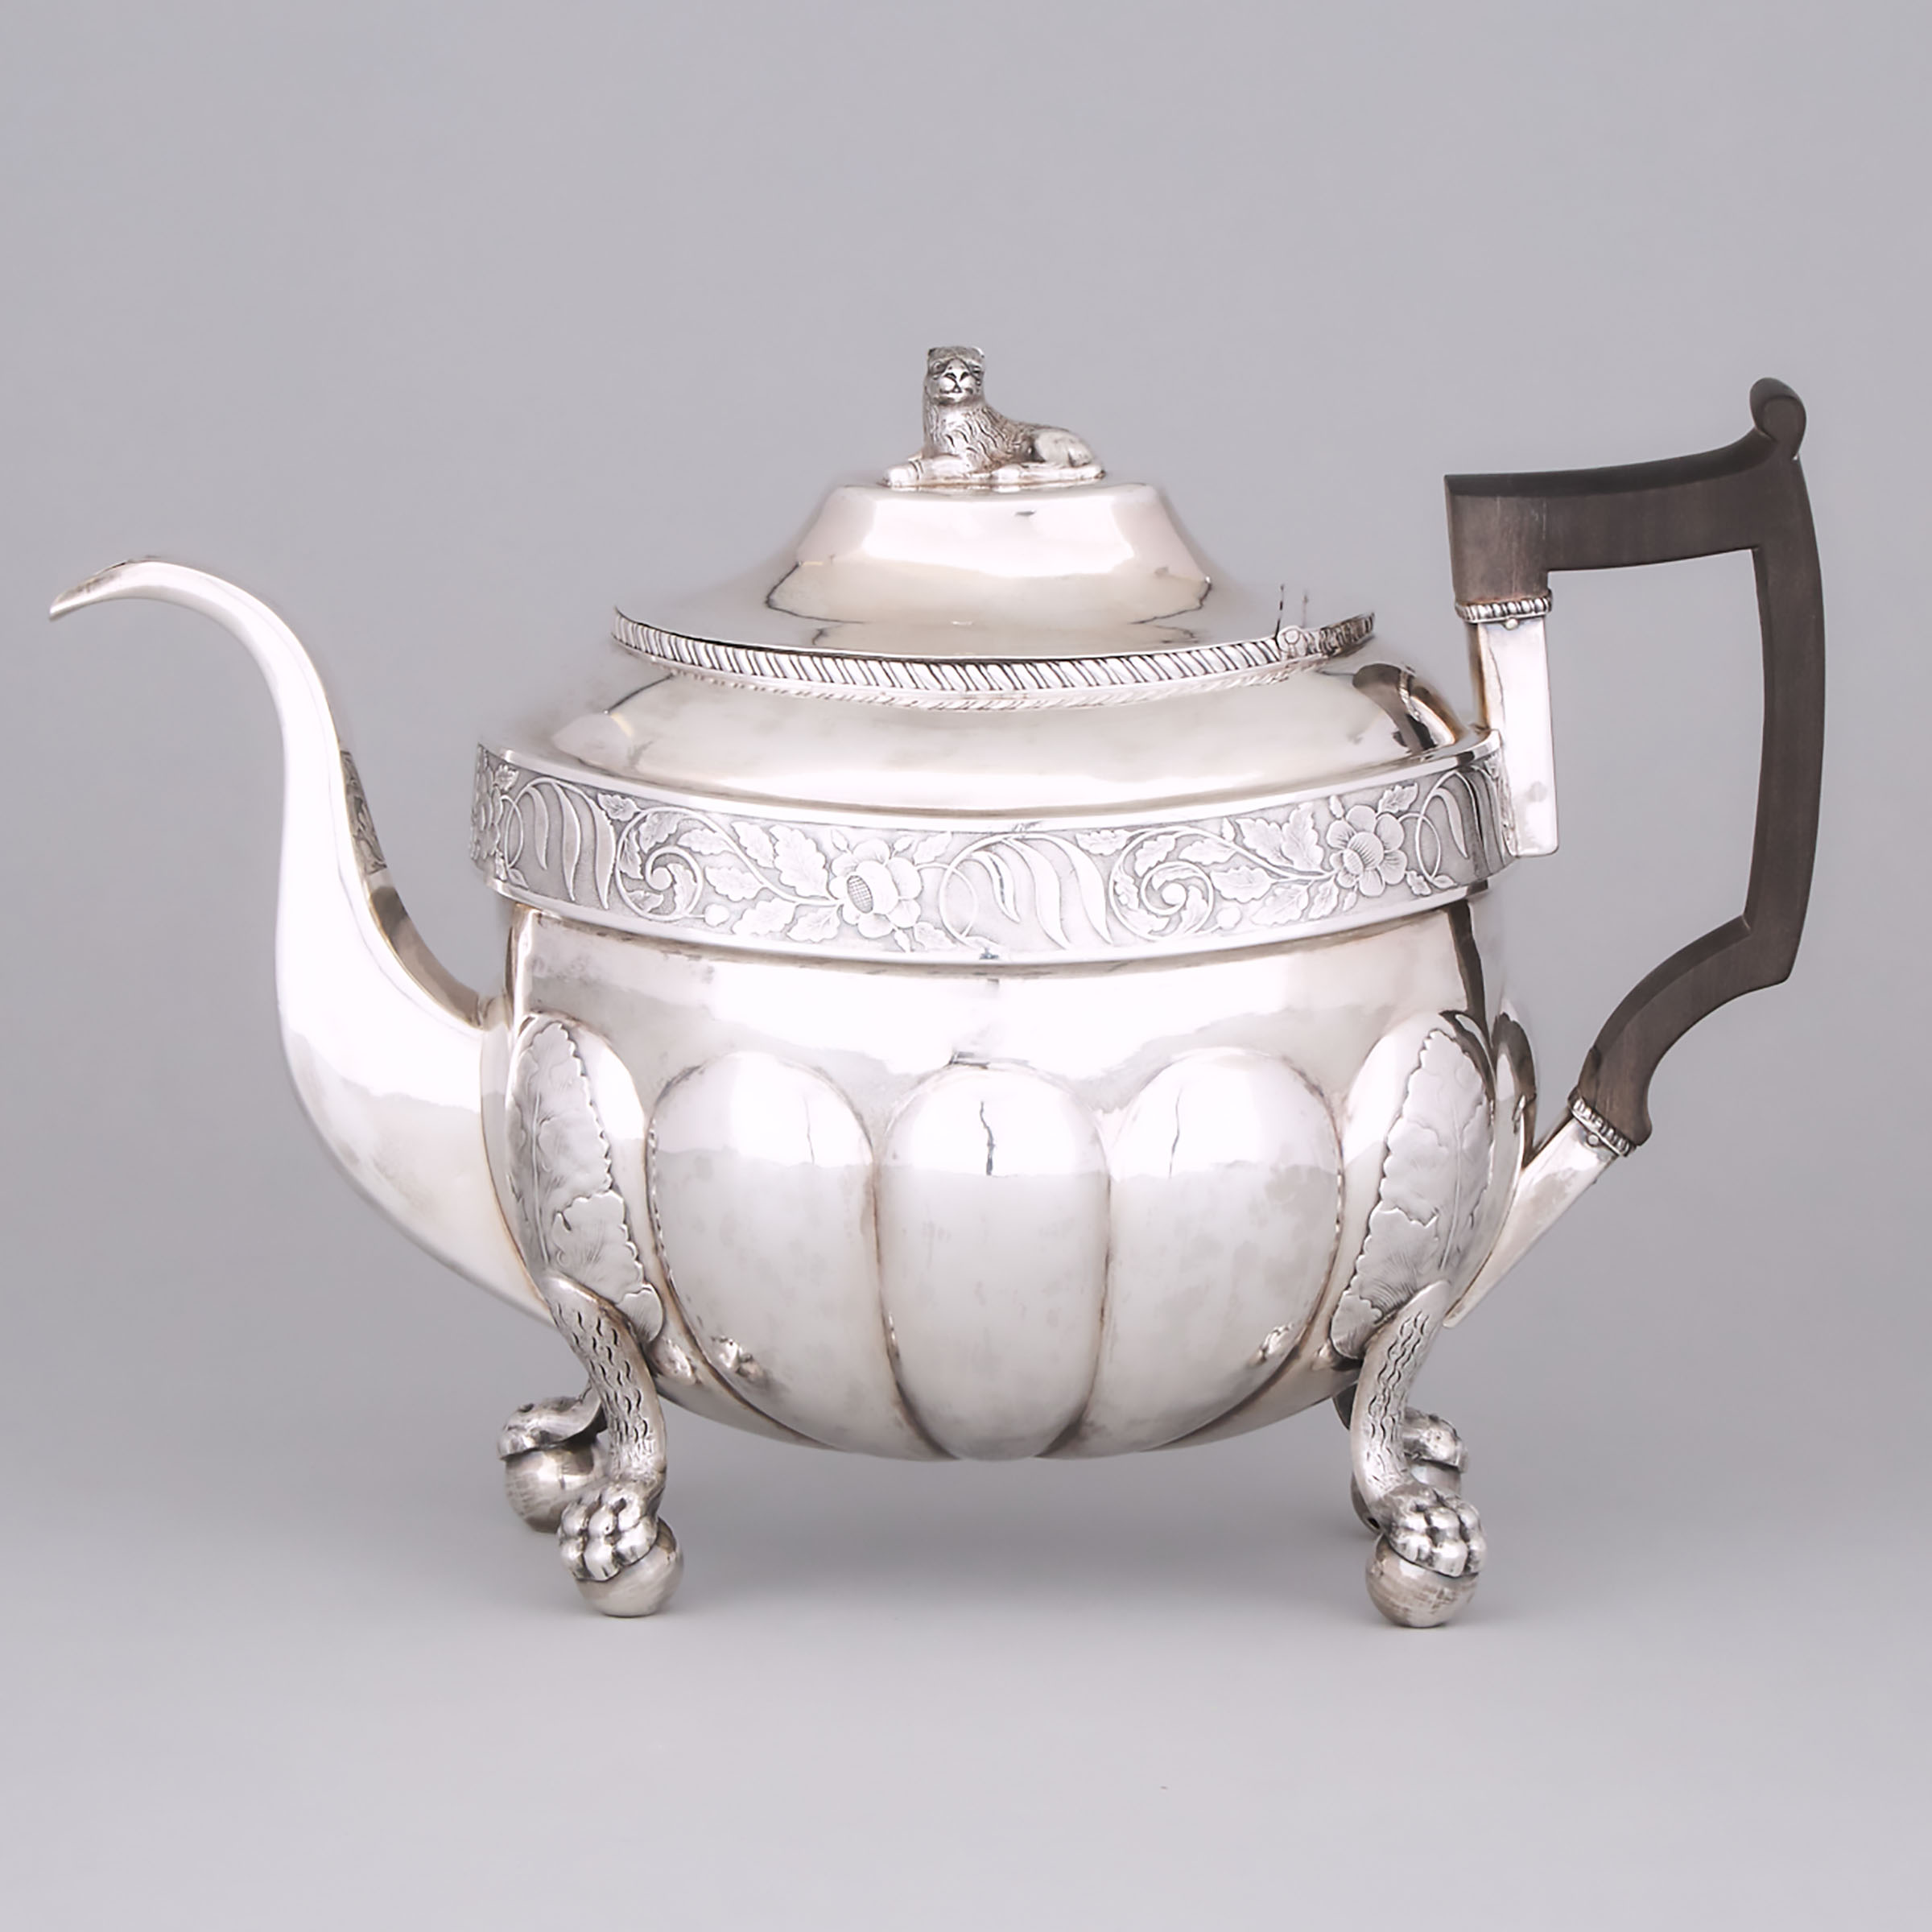 American Silver Teapot, John Wesley Forbes, New York, N.Y., c.1810